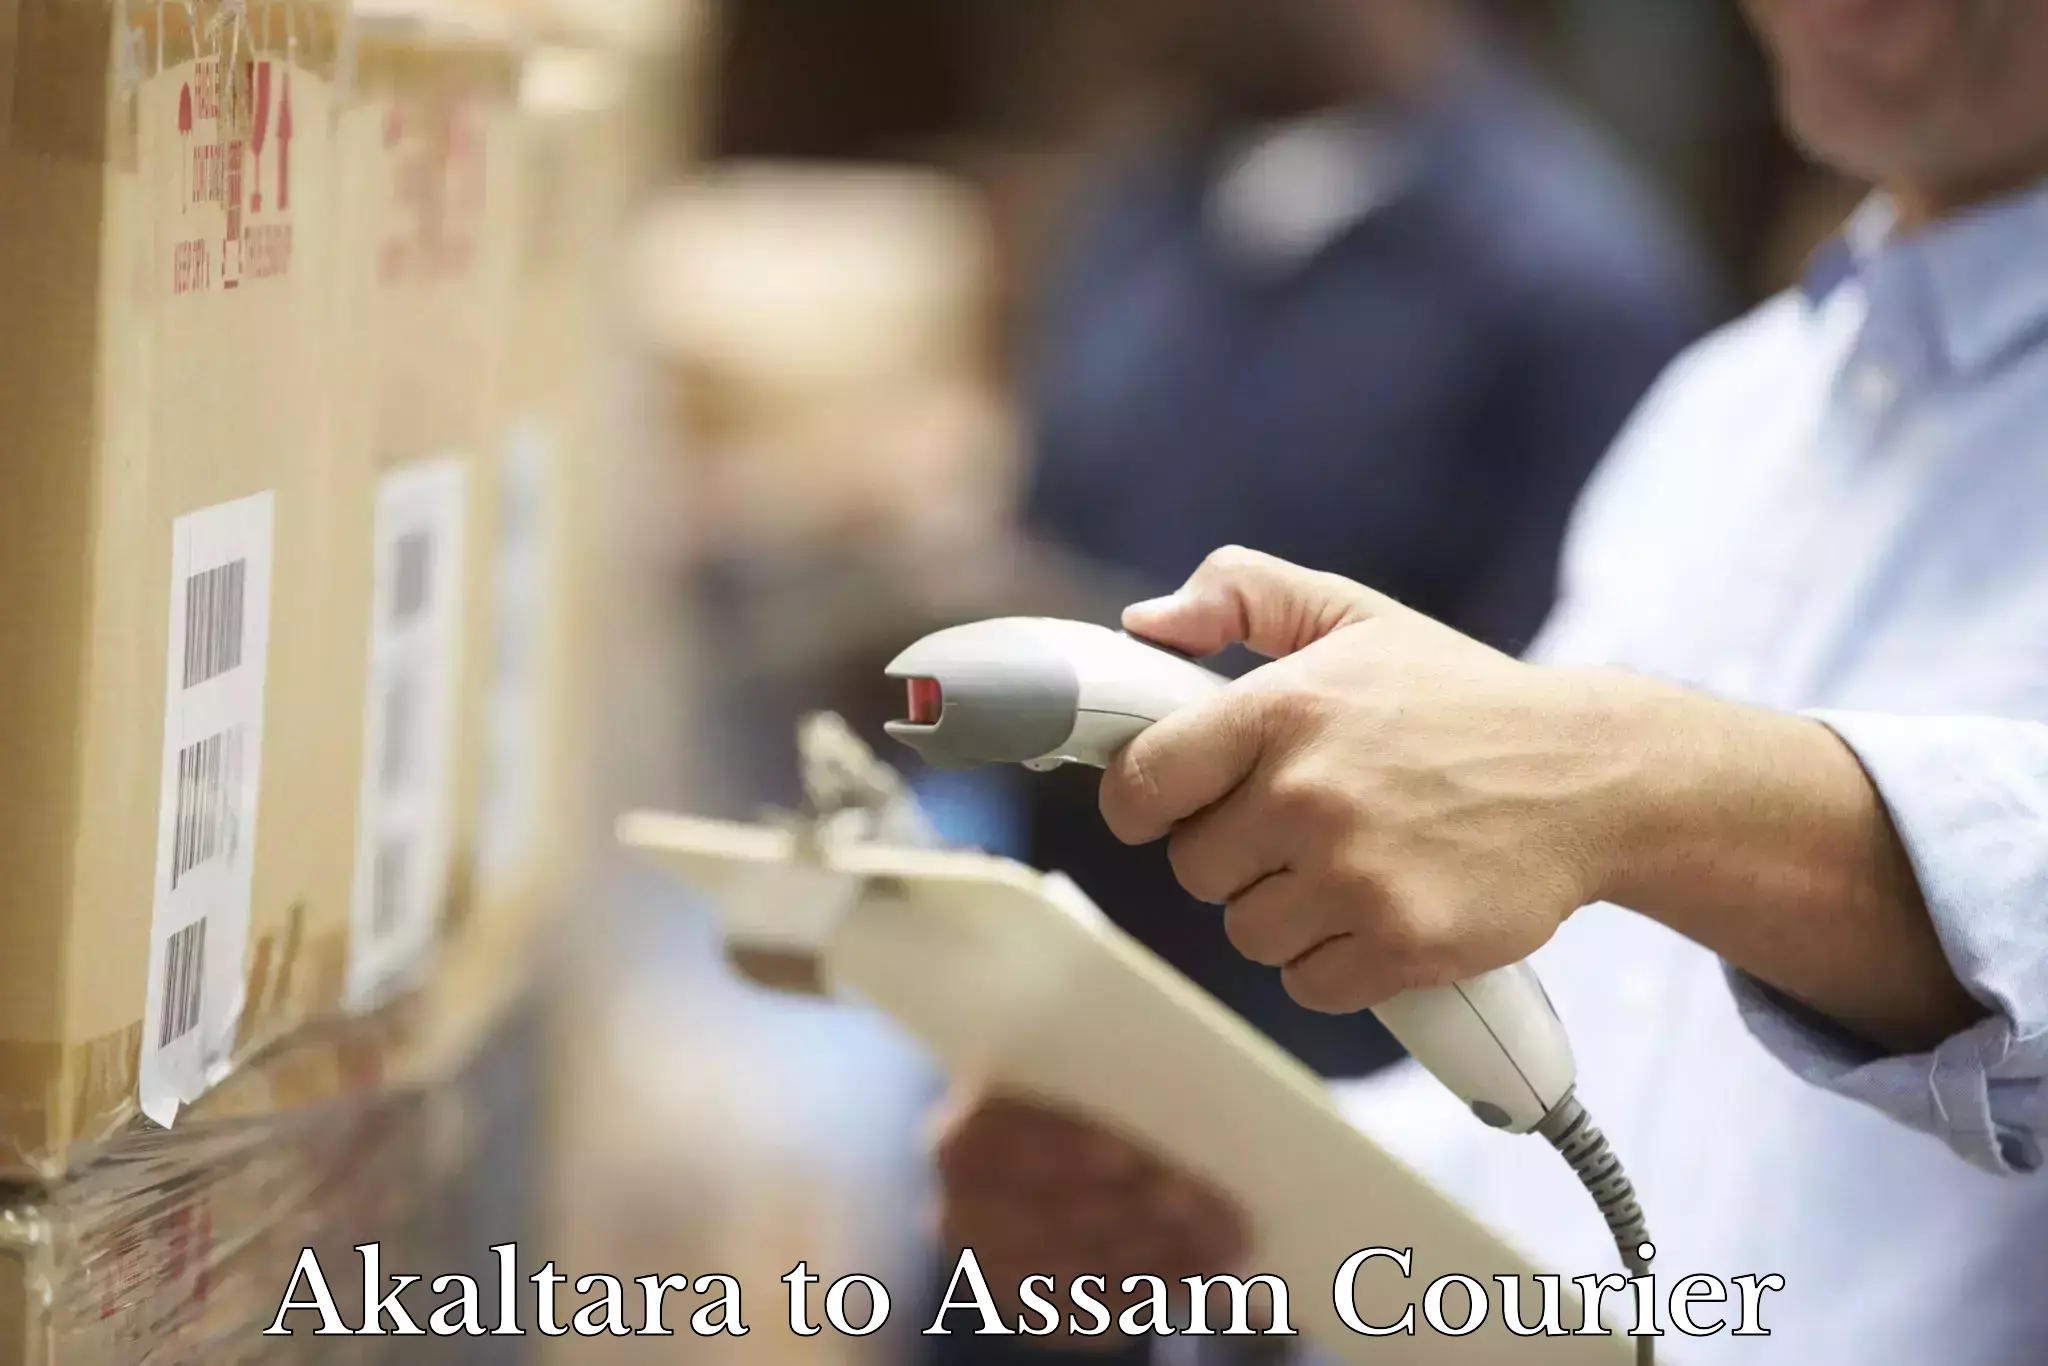 Ocean freight courier Akaltara to Assam